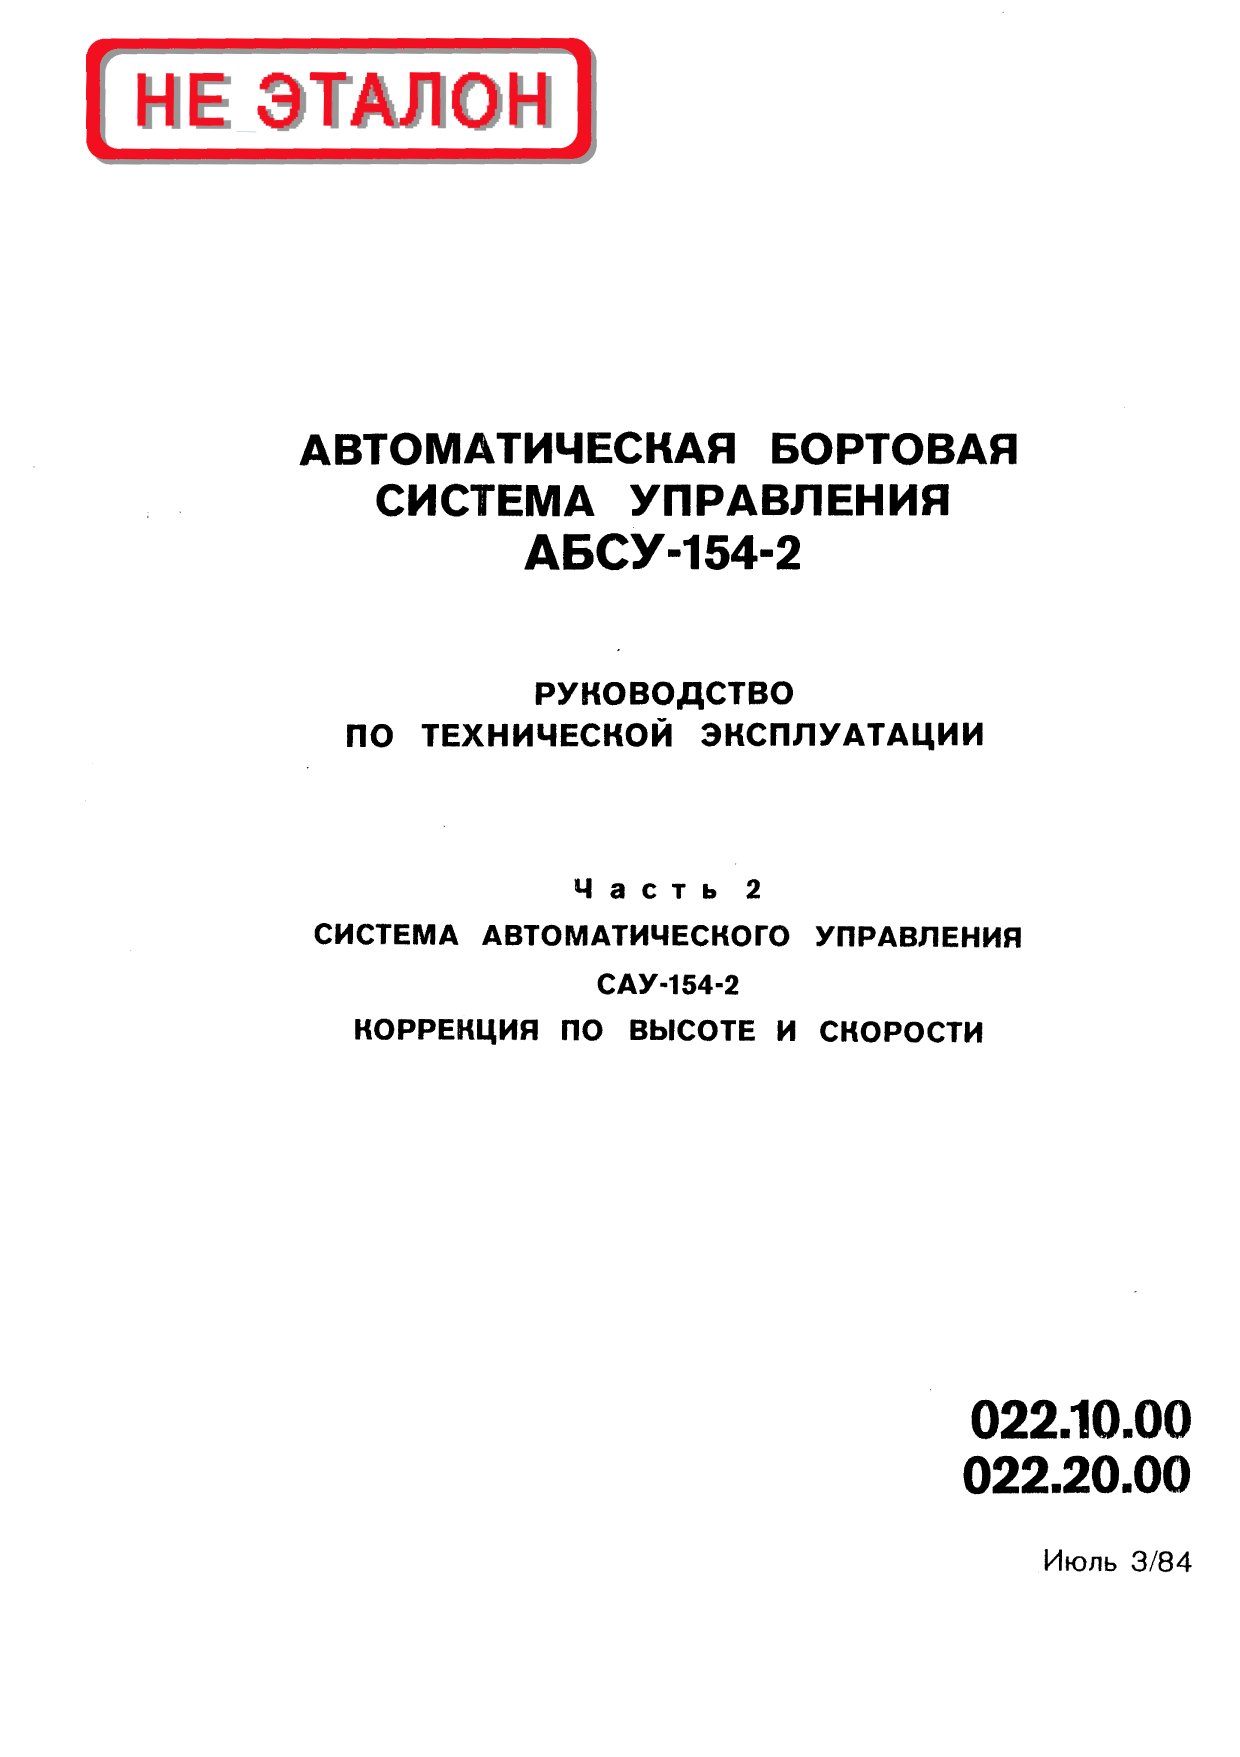 Автоматическая бортовая система управления АБСУ-154-2. (2 книга)